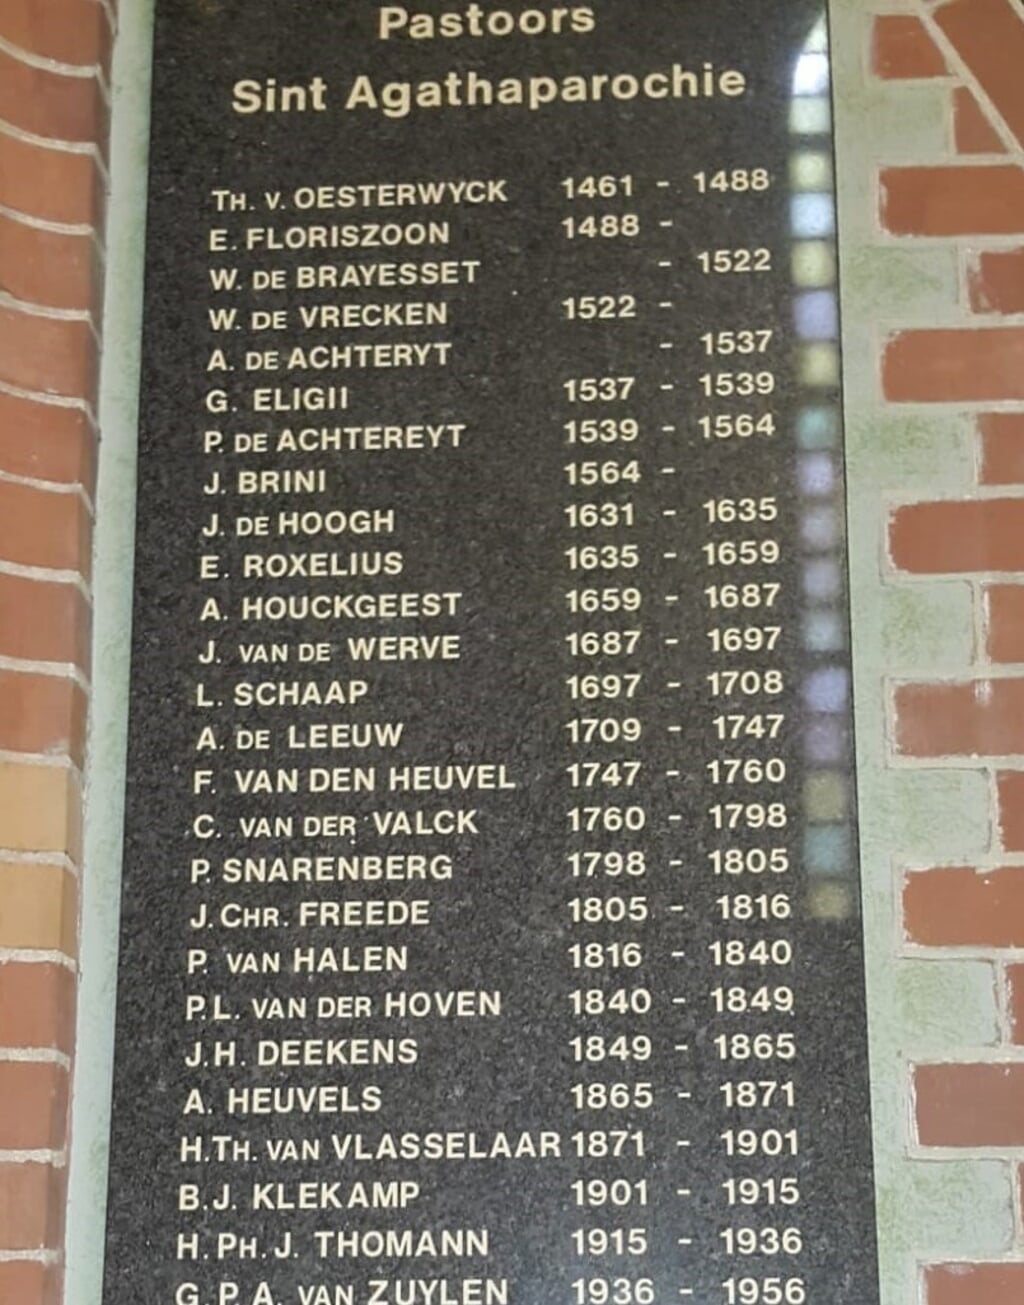 Alle pastoors van de Agathakerk vanaf 1461 tot 1956 staan op deze foto. De lijst hangt naast de ingang naar de kerkzaal. | Foto: Nico Groen